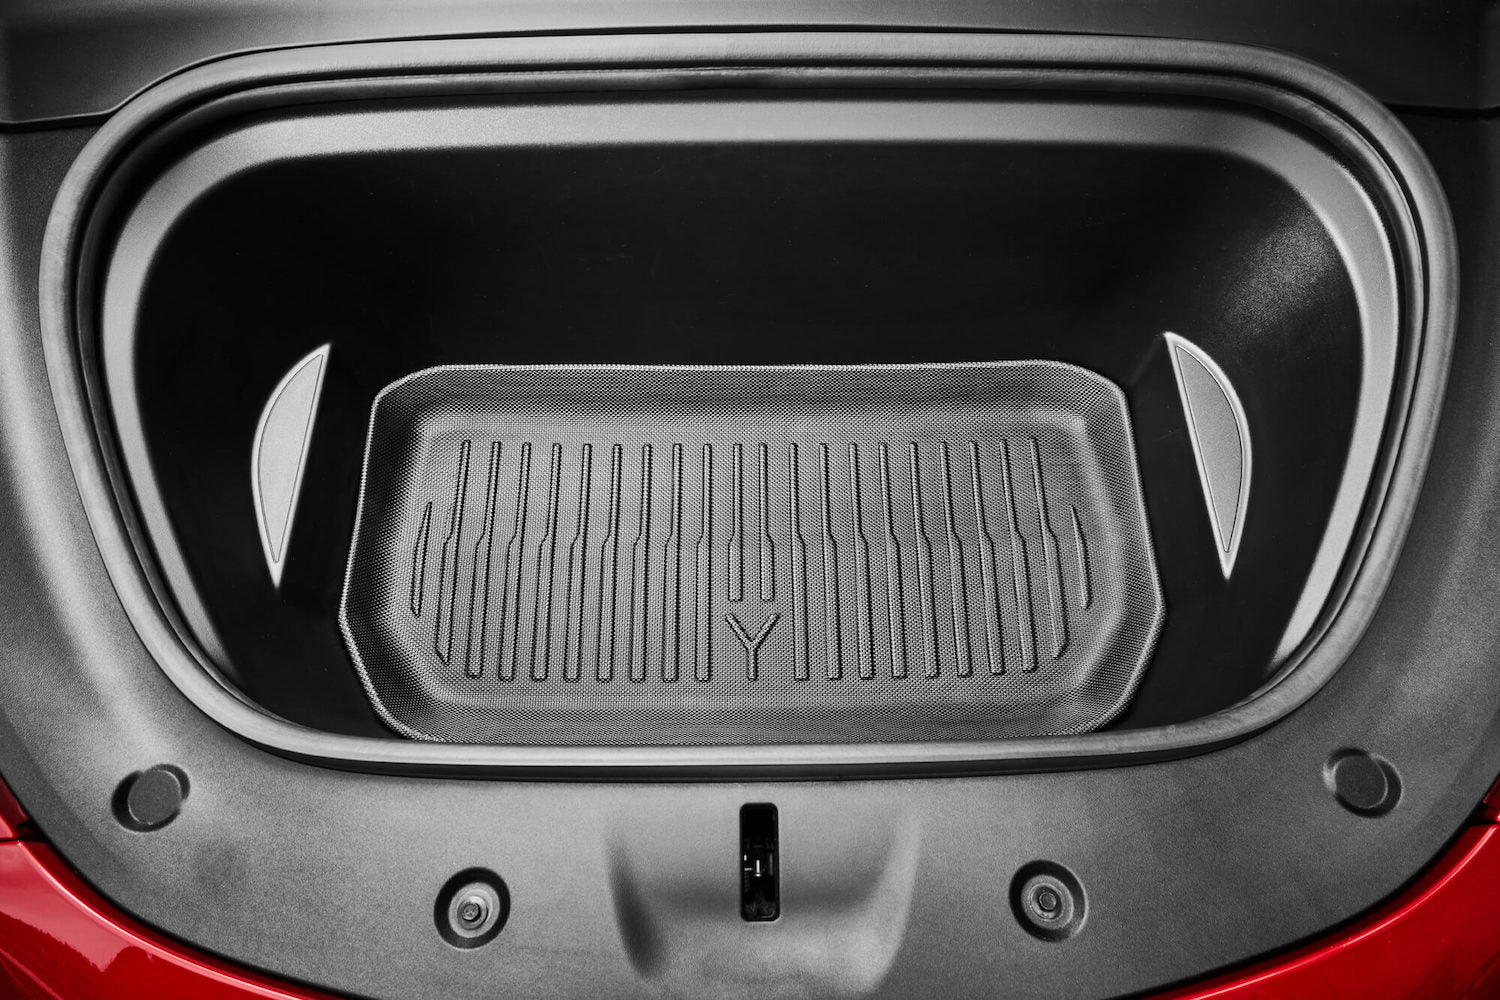 Auto Gummi Fußmatten Schwarz Premium Set passend für Tesla Model Y ab 2020  kaufen